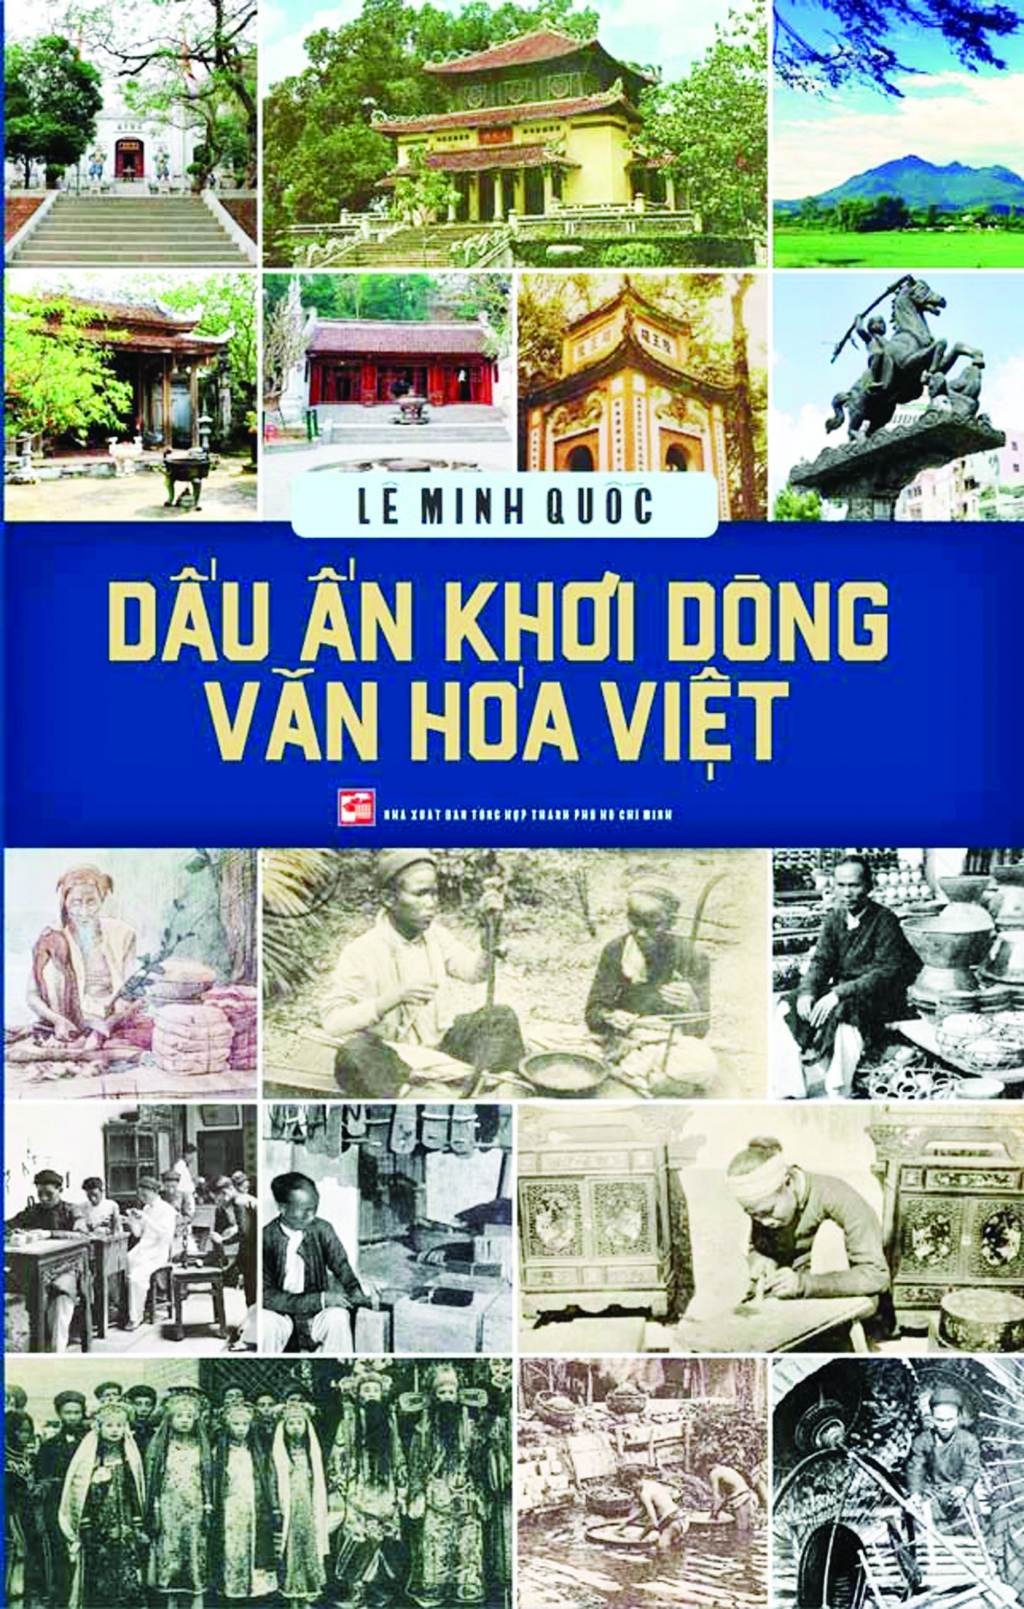 Lần theo dấu vết văn hóa người Việt xưa